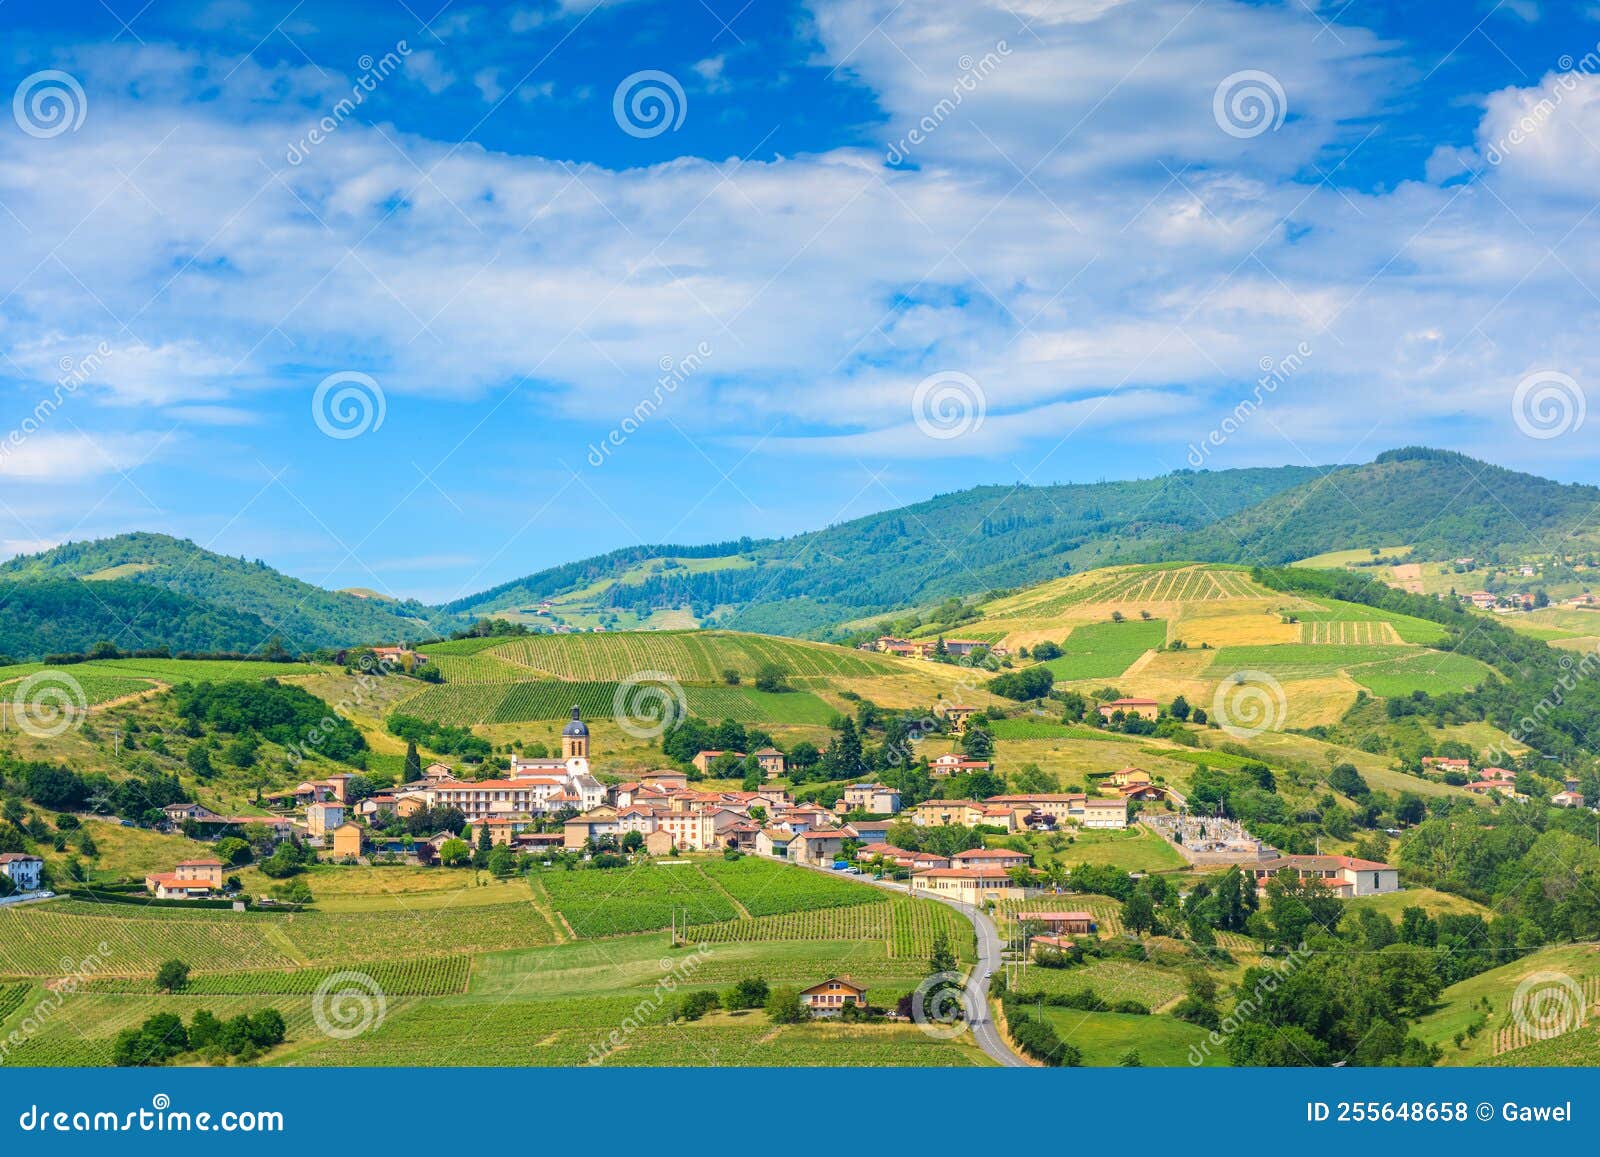 letra village and vineyards landscape in france